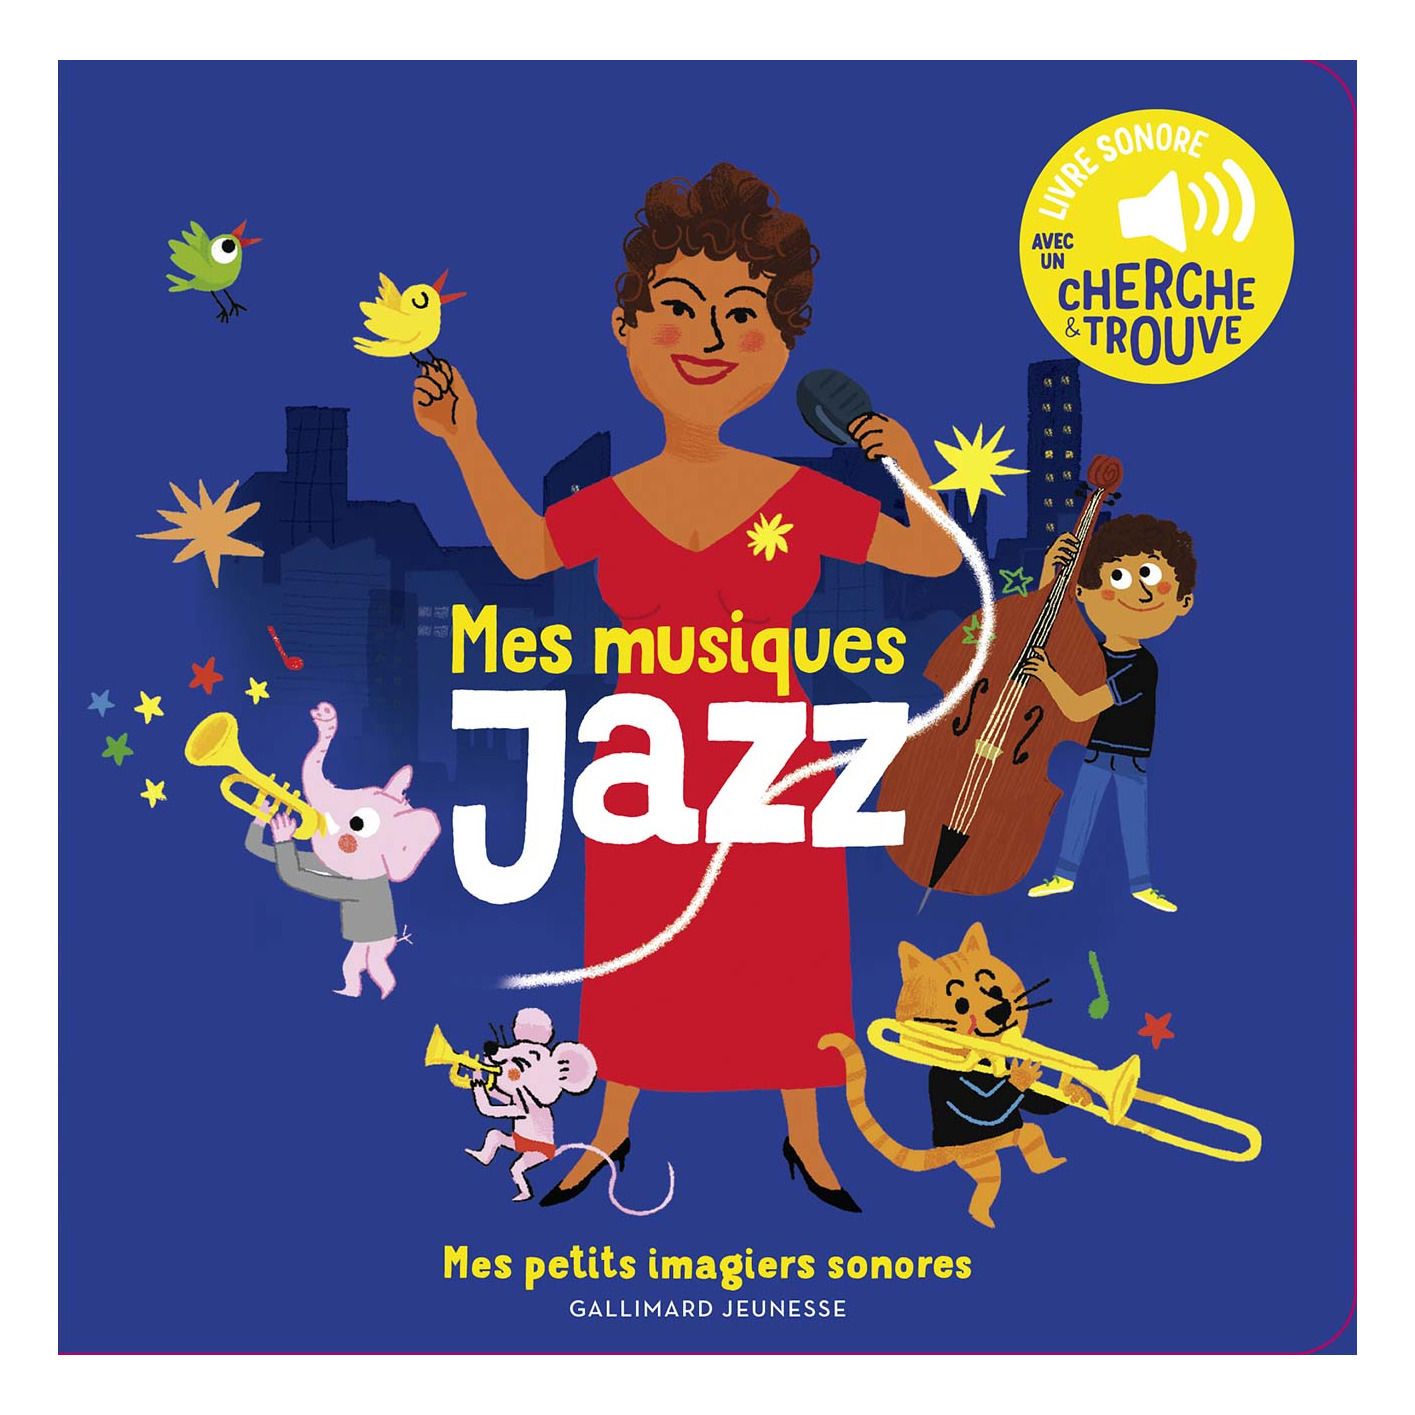 Gallimard Jeunesse - Libro dei suoni della musica jazz - Charlotte